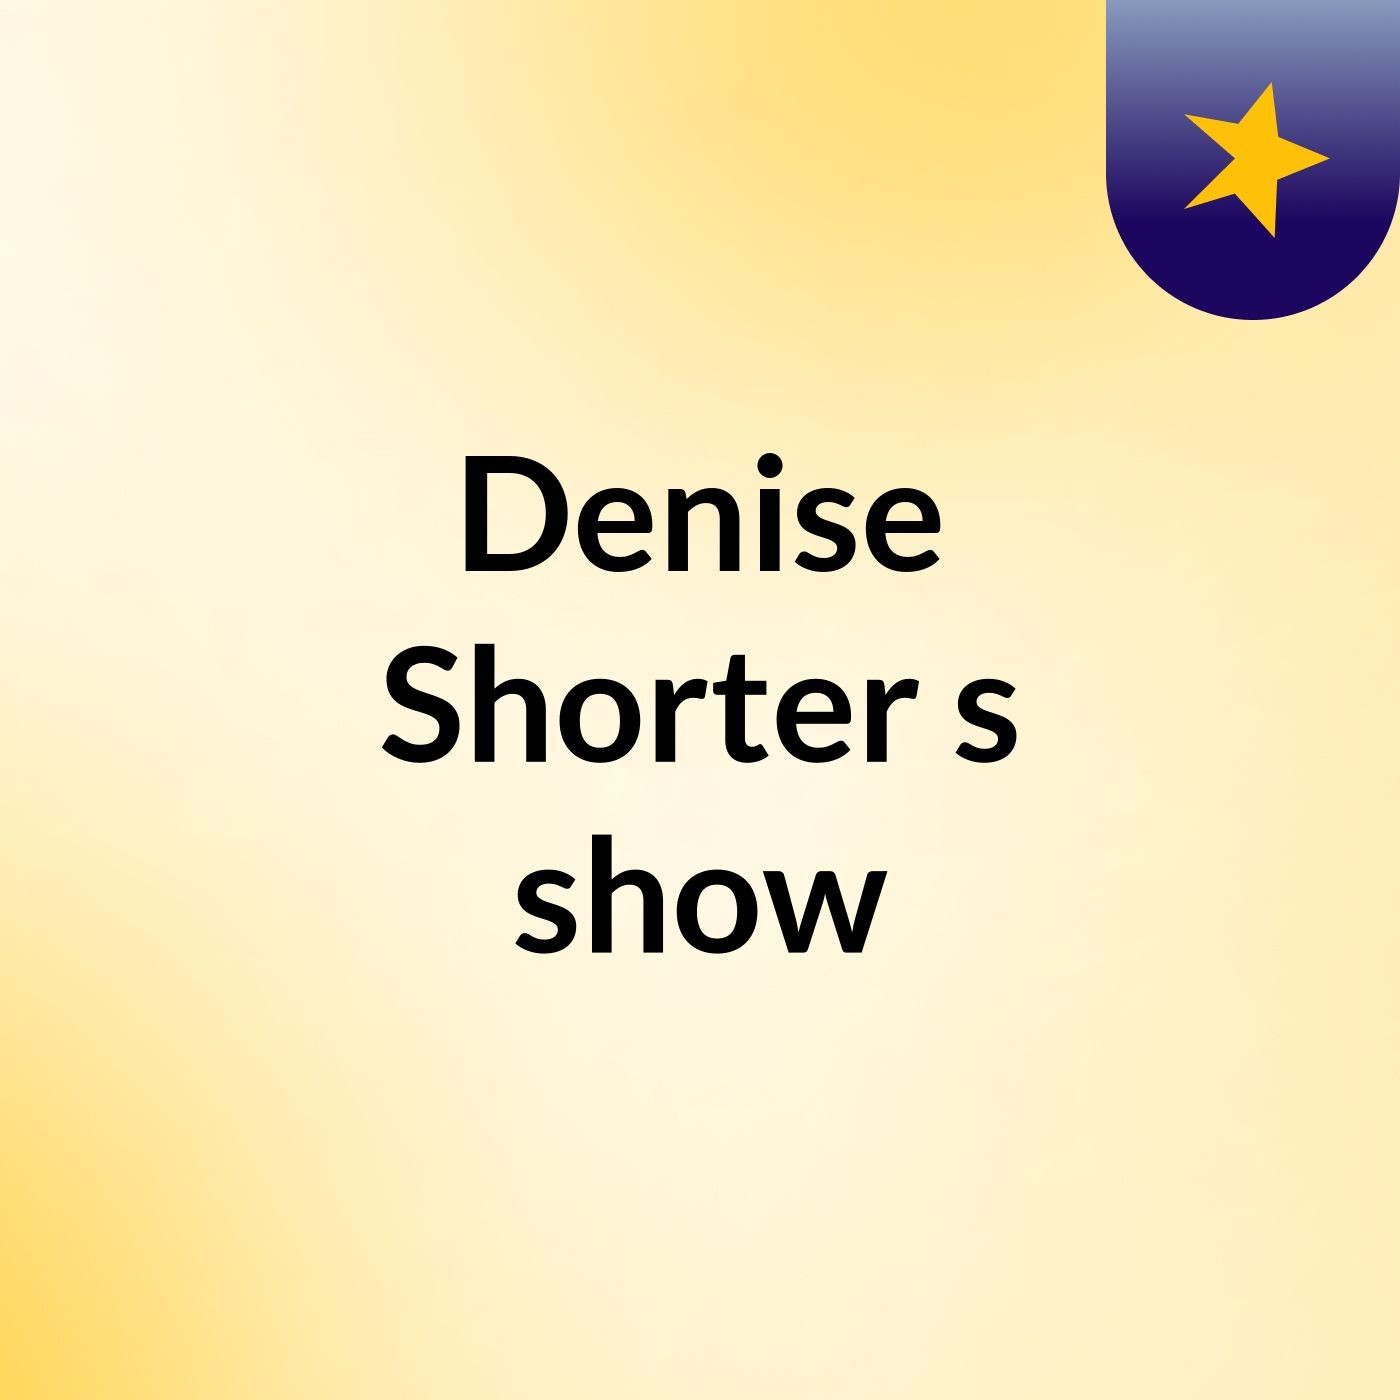 Denise Shorter's show